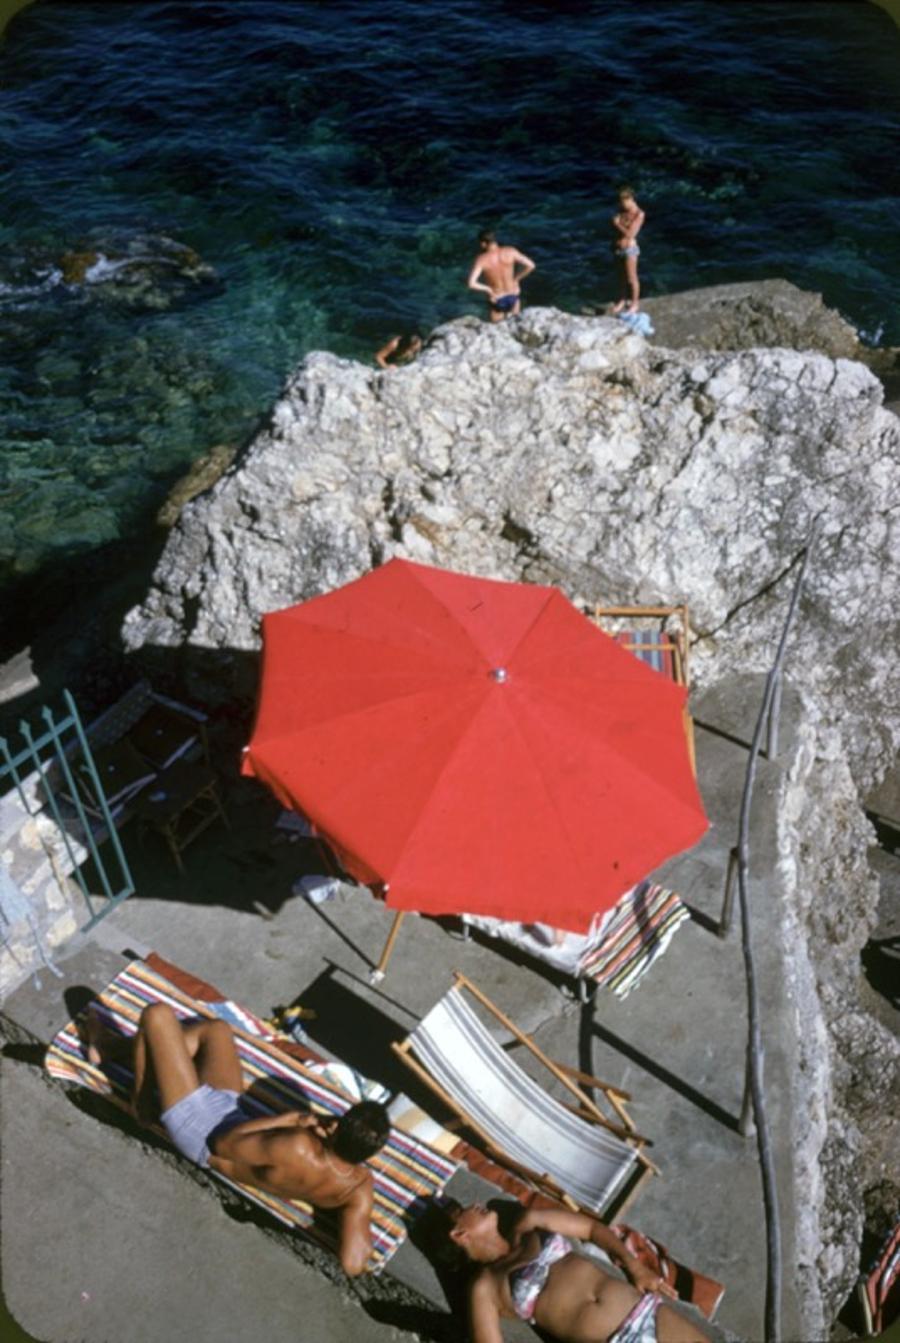 La Canzone del Mare 
1958
von Slim Aarons

Slim Aarons Limited Estate Edition

La Canzone del Mare in Capri, Italien, Juli 1958. 

ungerahmt
C Typ Druck
gedruckt 2023
24 x 20"  - Papierformat

Begrenzt auf 150 Abzüge - unabhängig vom